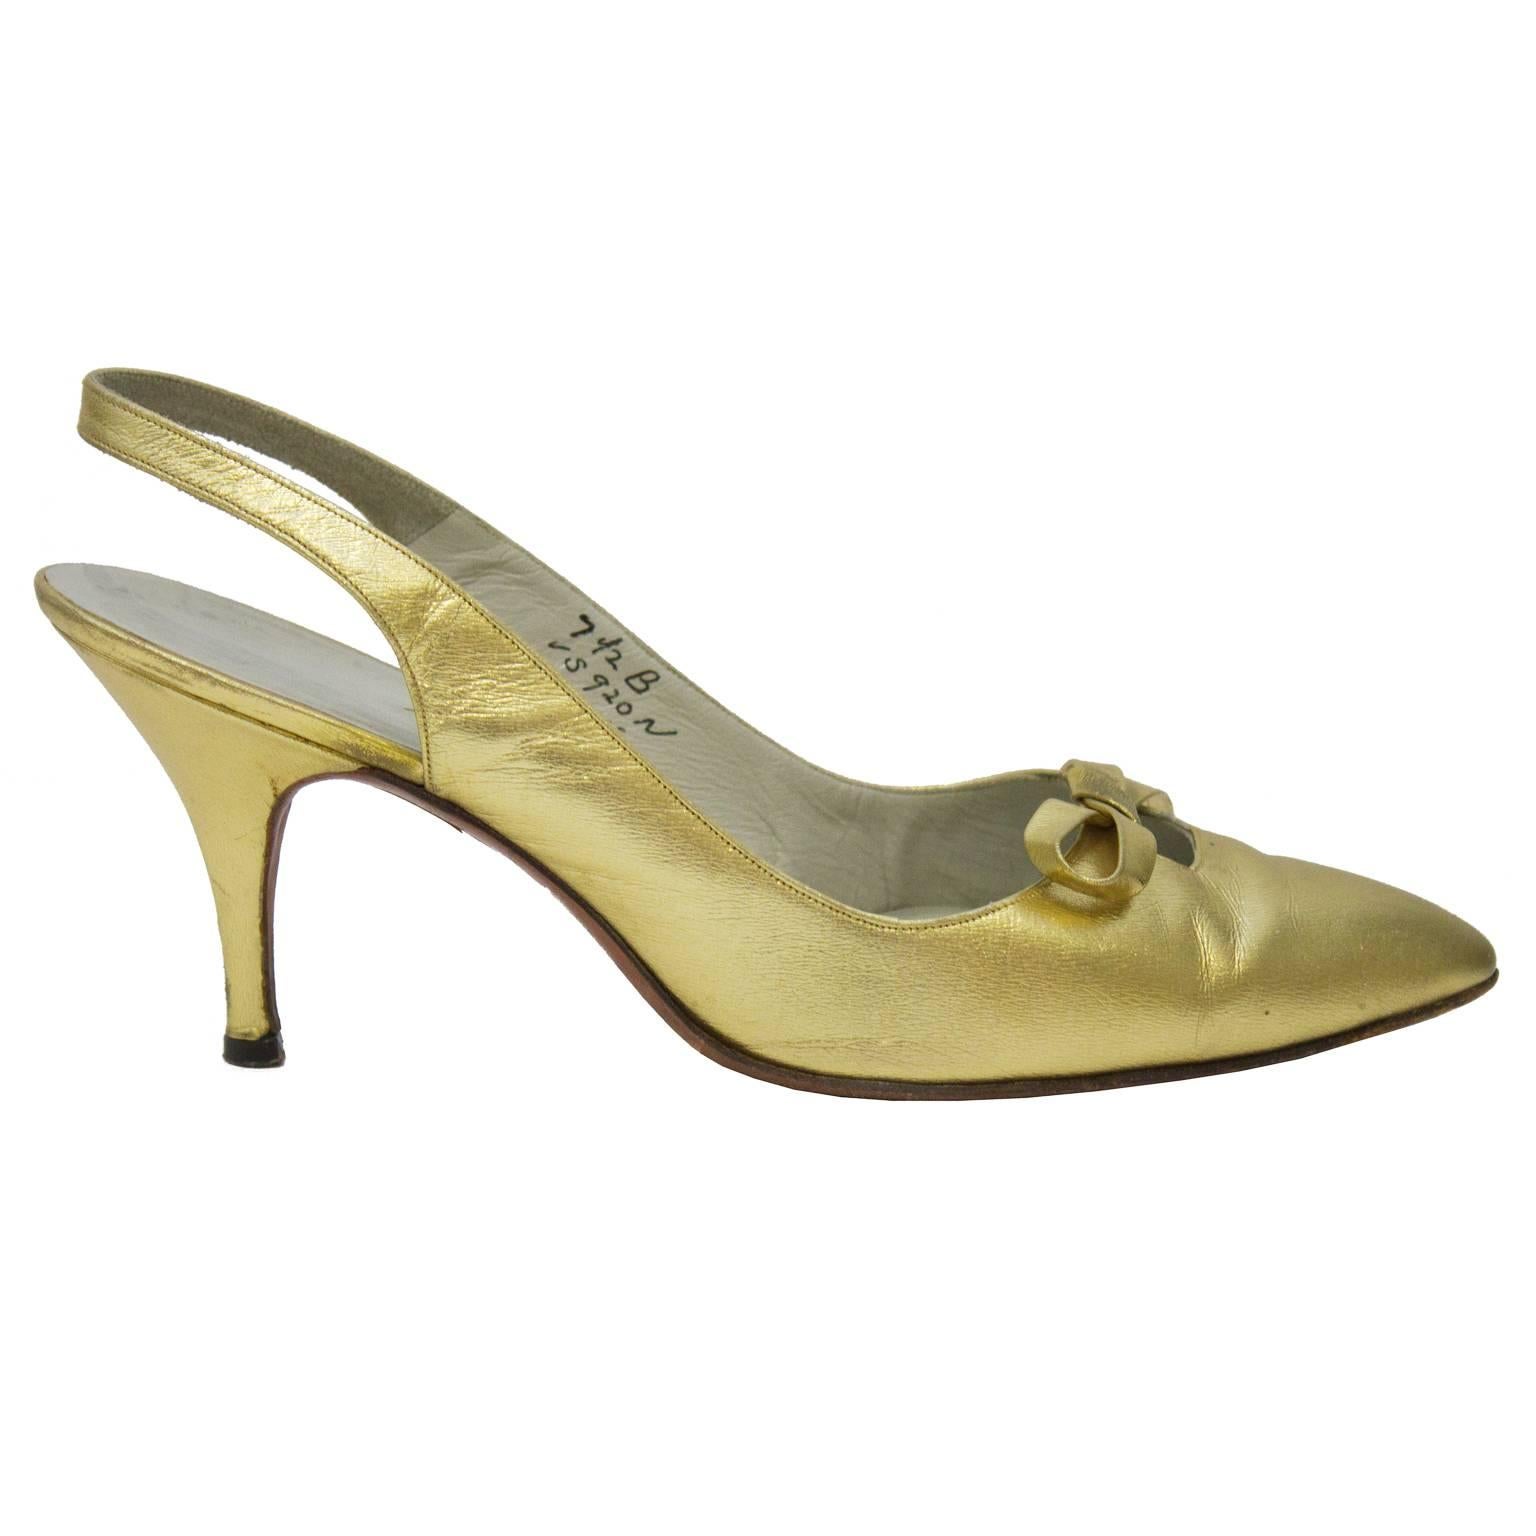 1950's Roger Vivier Gold Leder spitze Zehe Slingback Fersen. Der Schuh hat einen kleinen Ausschnitt mit einer Schleife am Hals. Innenausstattung aus cremefarbenem Leder. Ausgezeichneter Vintage-Zustand Klassisch eleganter Stil mit moderatem Absatz.